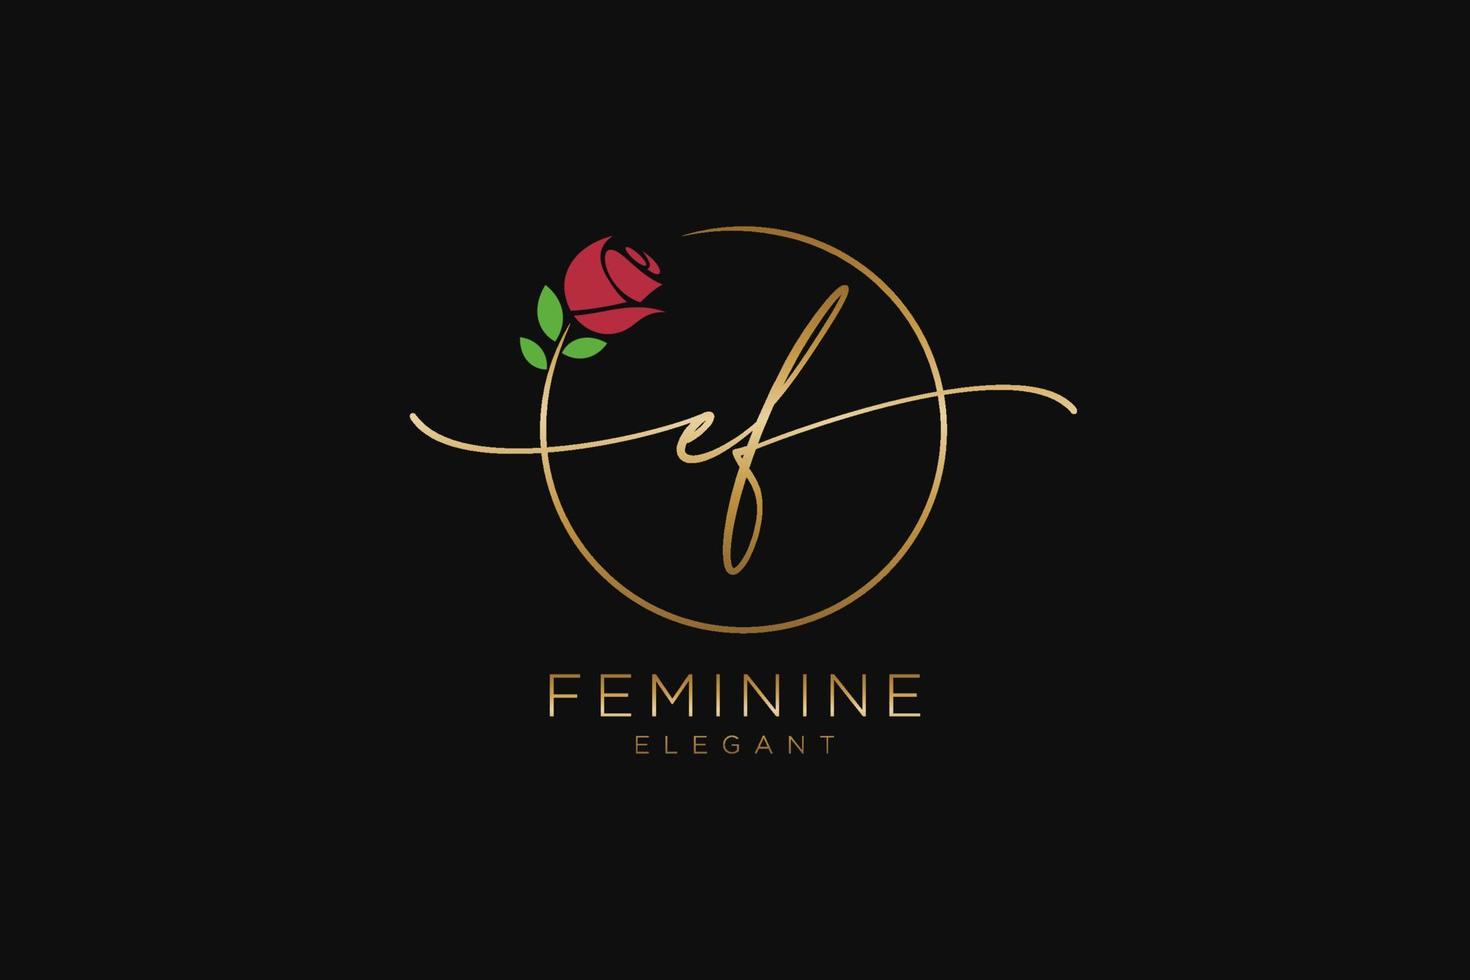 monogramme de beauté du logo féminin initial ef et design élégant du logo, logo manuscrit de la signature initiale, mariage, mode, floral et botanique avec modèle créatif. vecteur